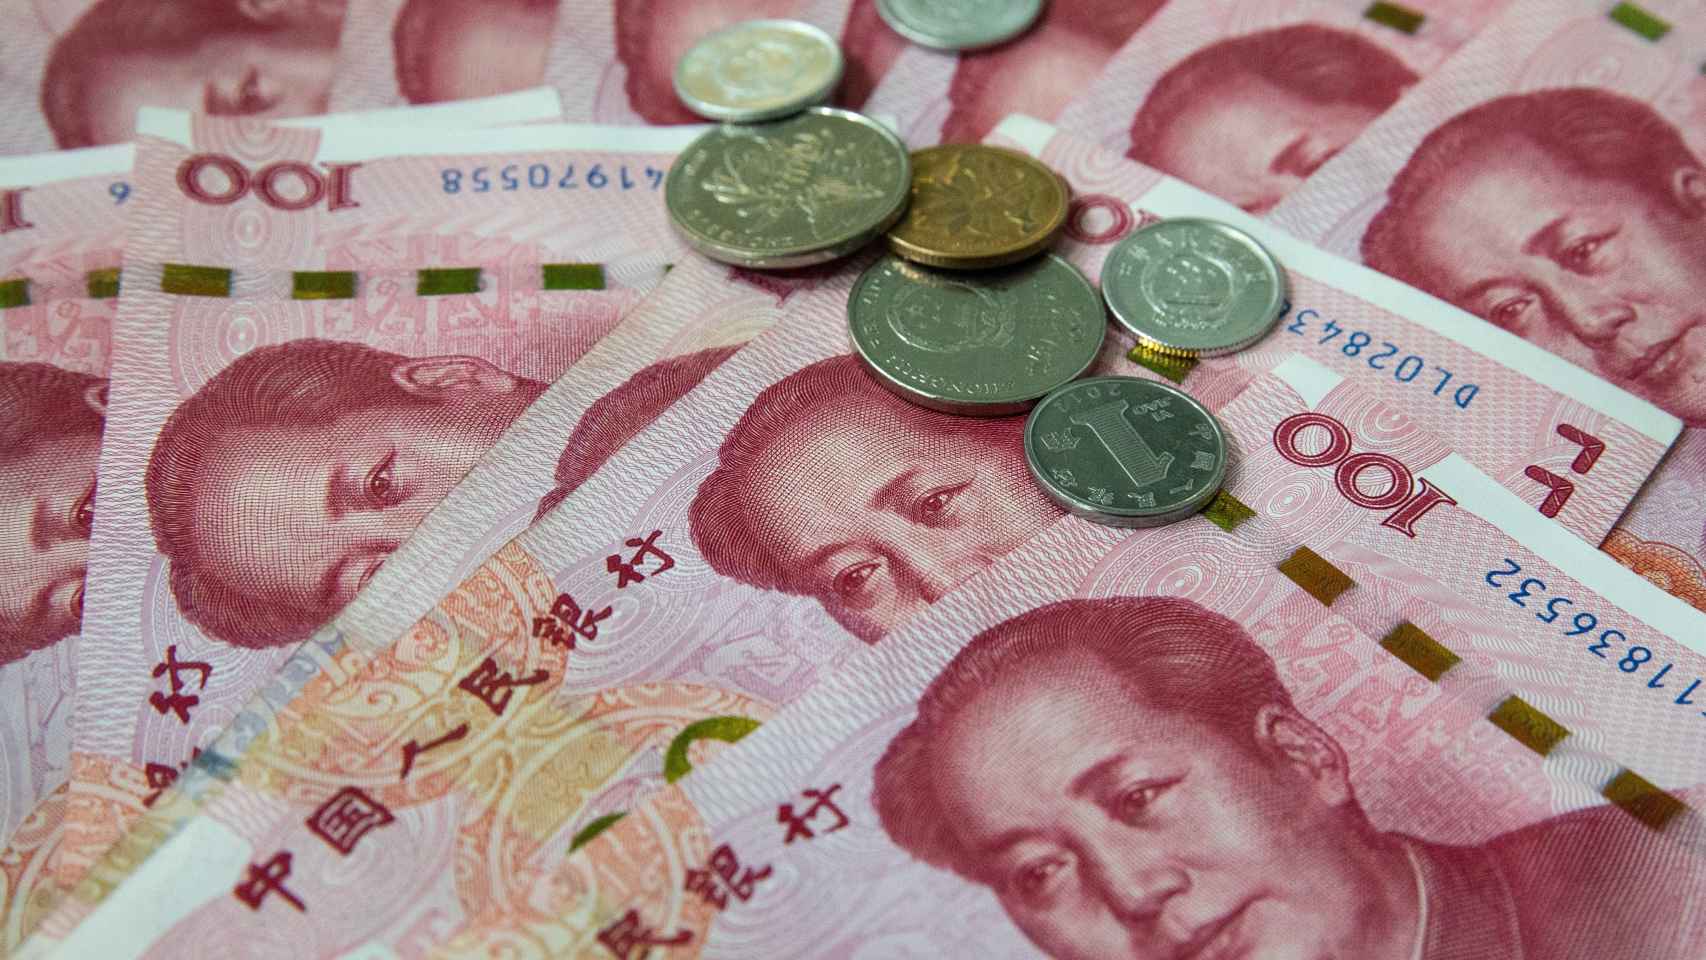 Billetes y monedas chinos de 100 yuanes.